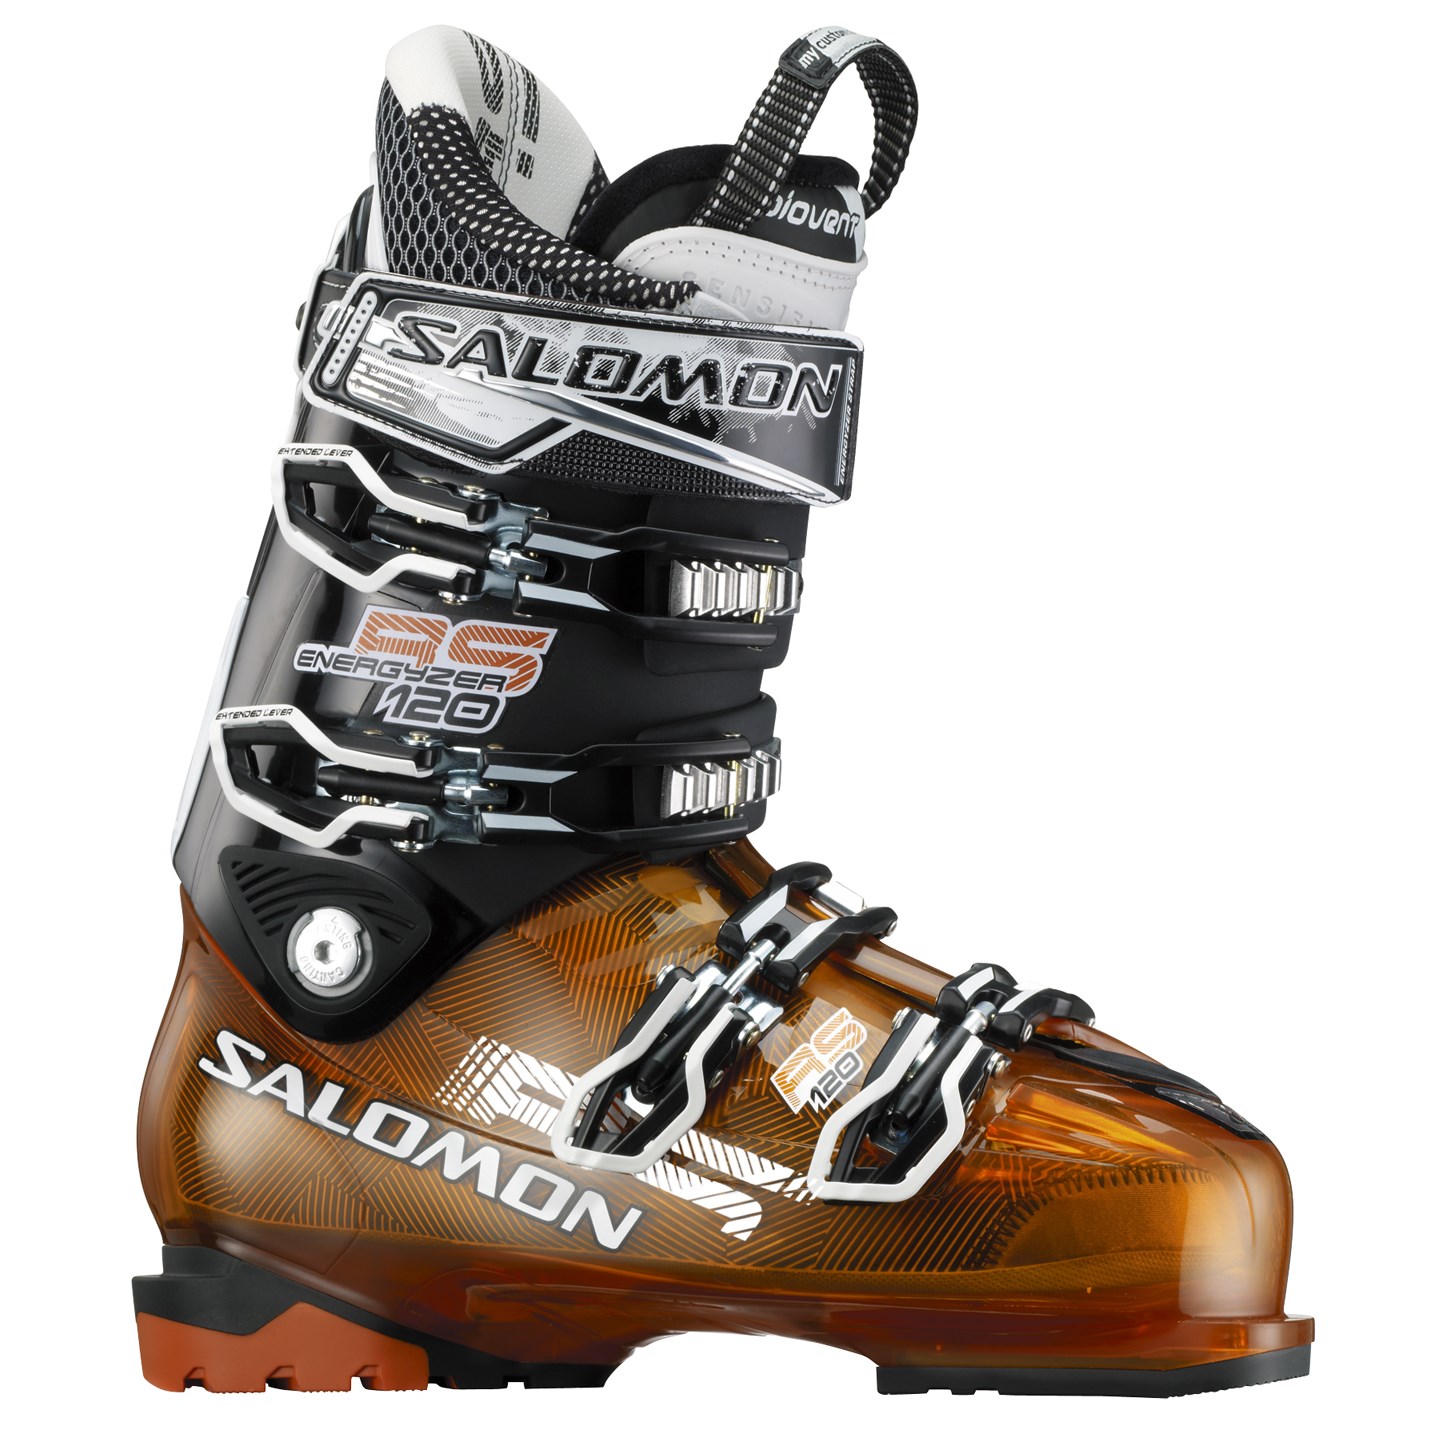 Persoonlijk schending Diplomaat Salomon RS 120 Ski Boots 2013 | evo